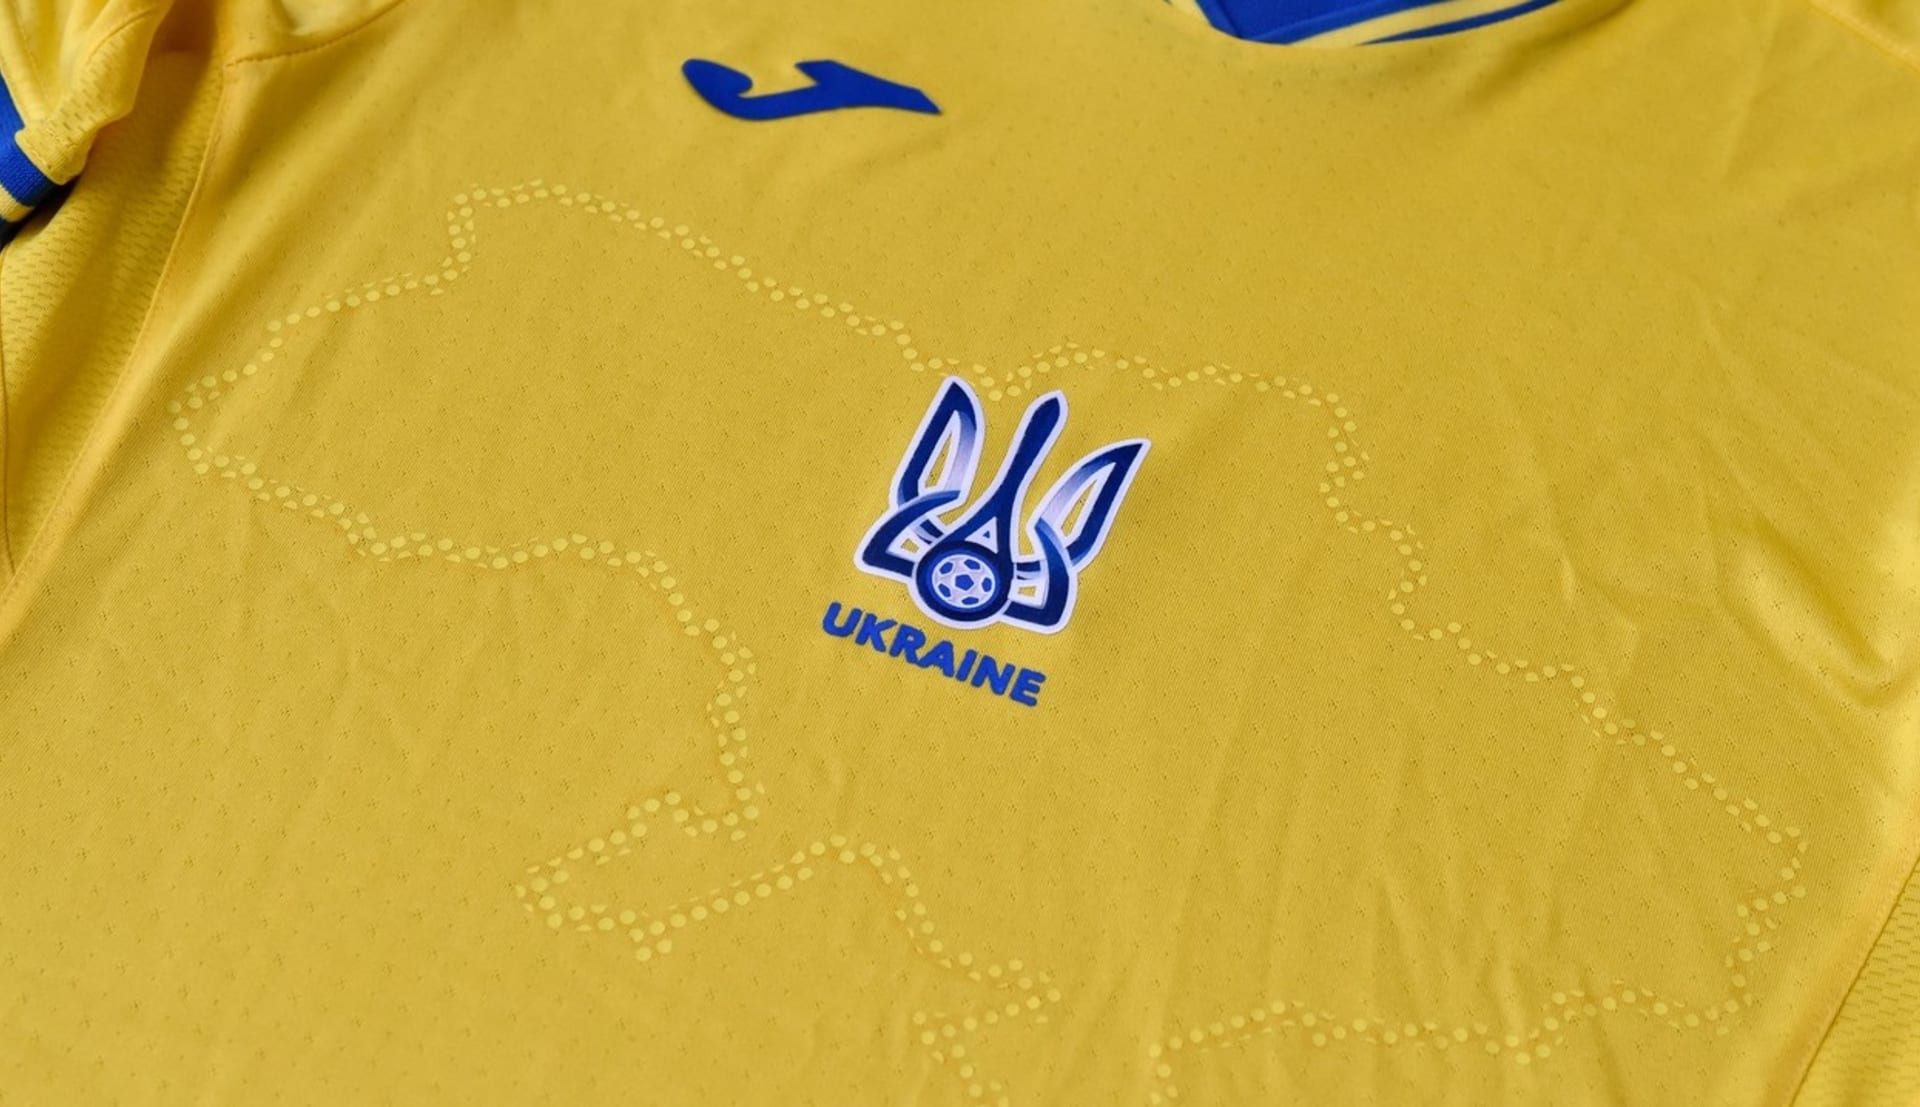 Ukrajinský dres pro mistrovství Evropy obnáší obrys země.